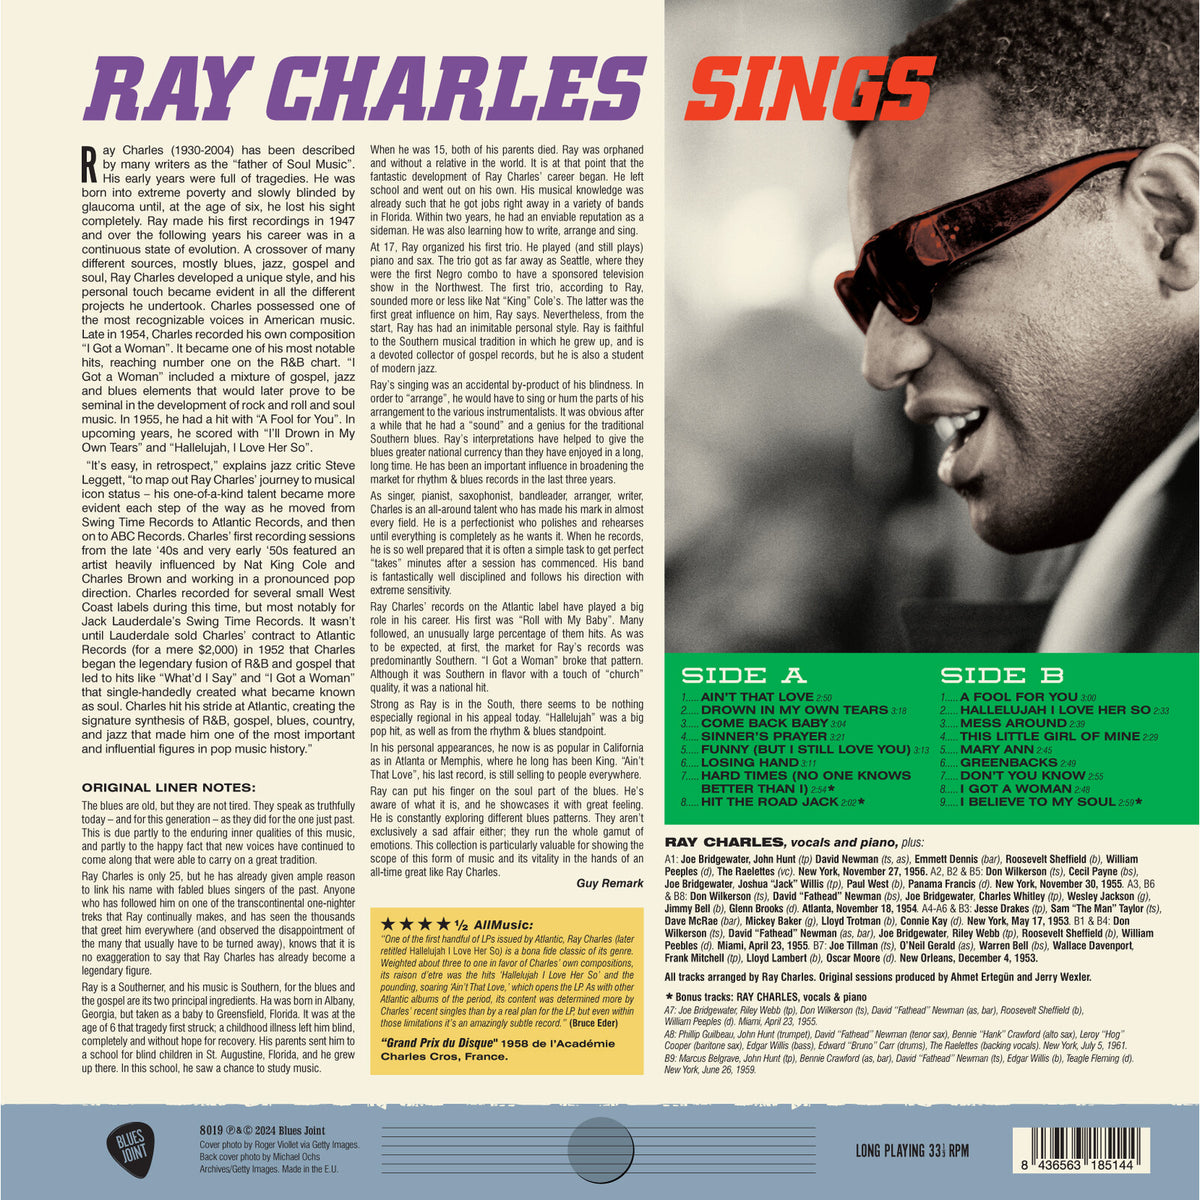 Ray Charles - Sings - 8019